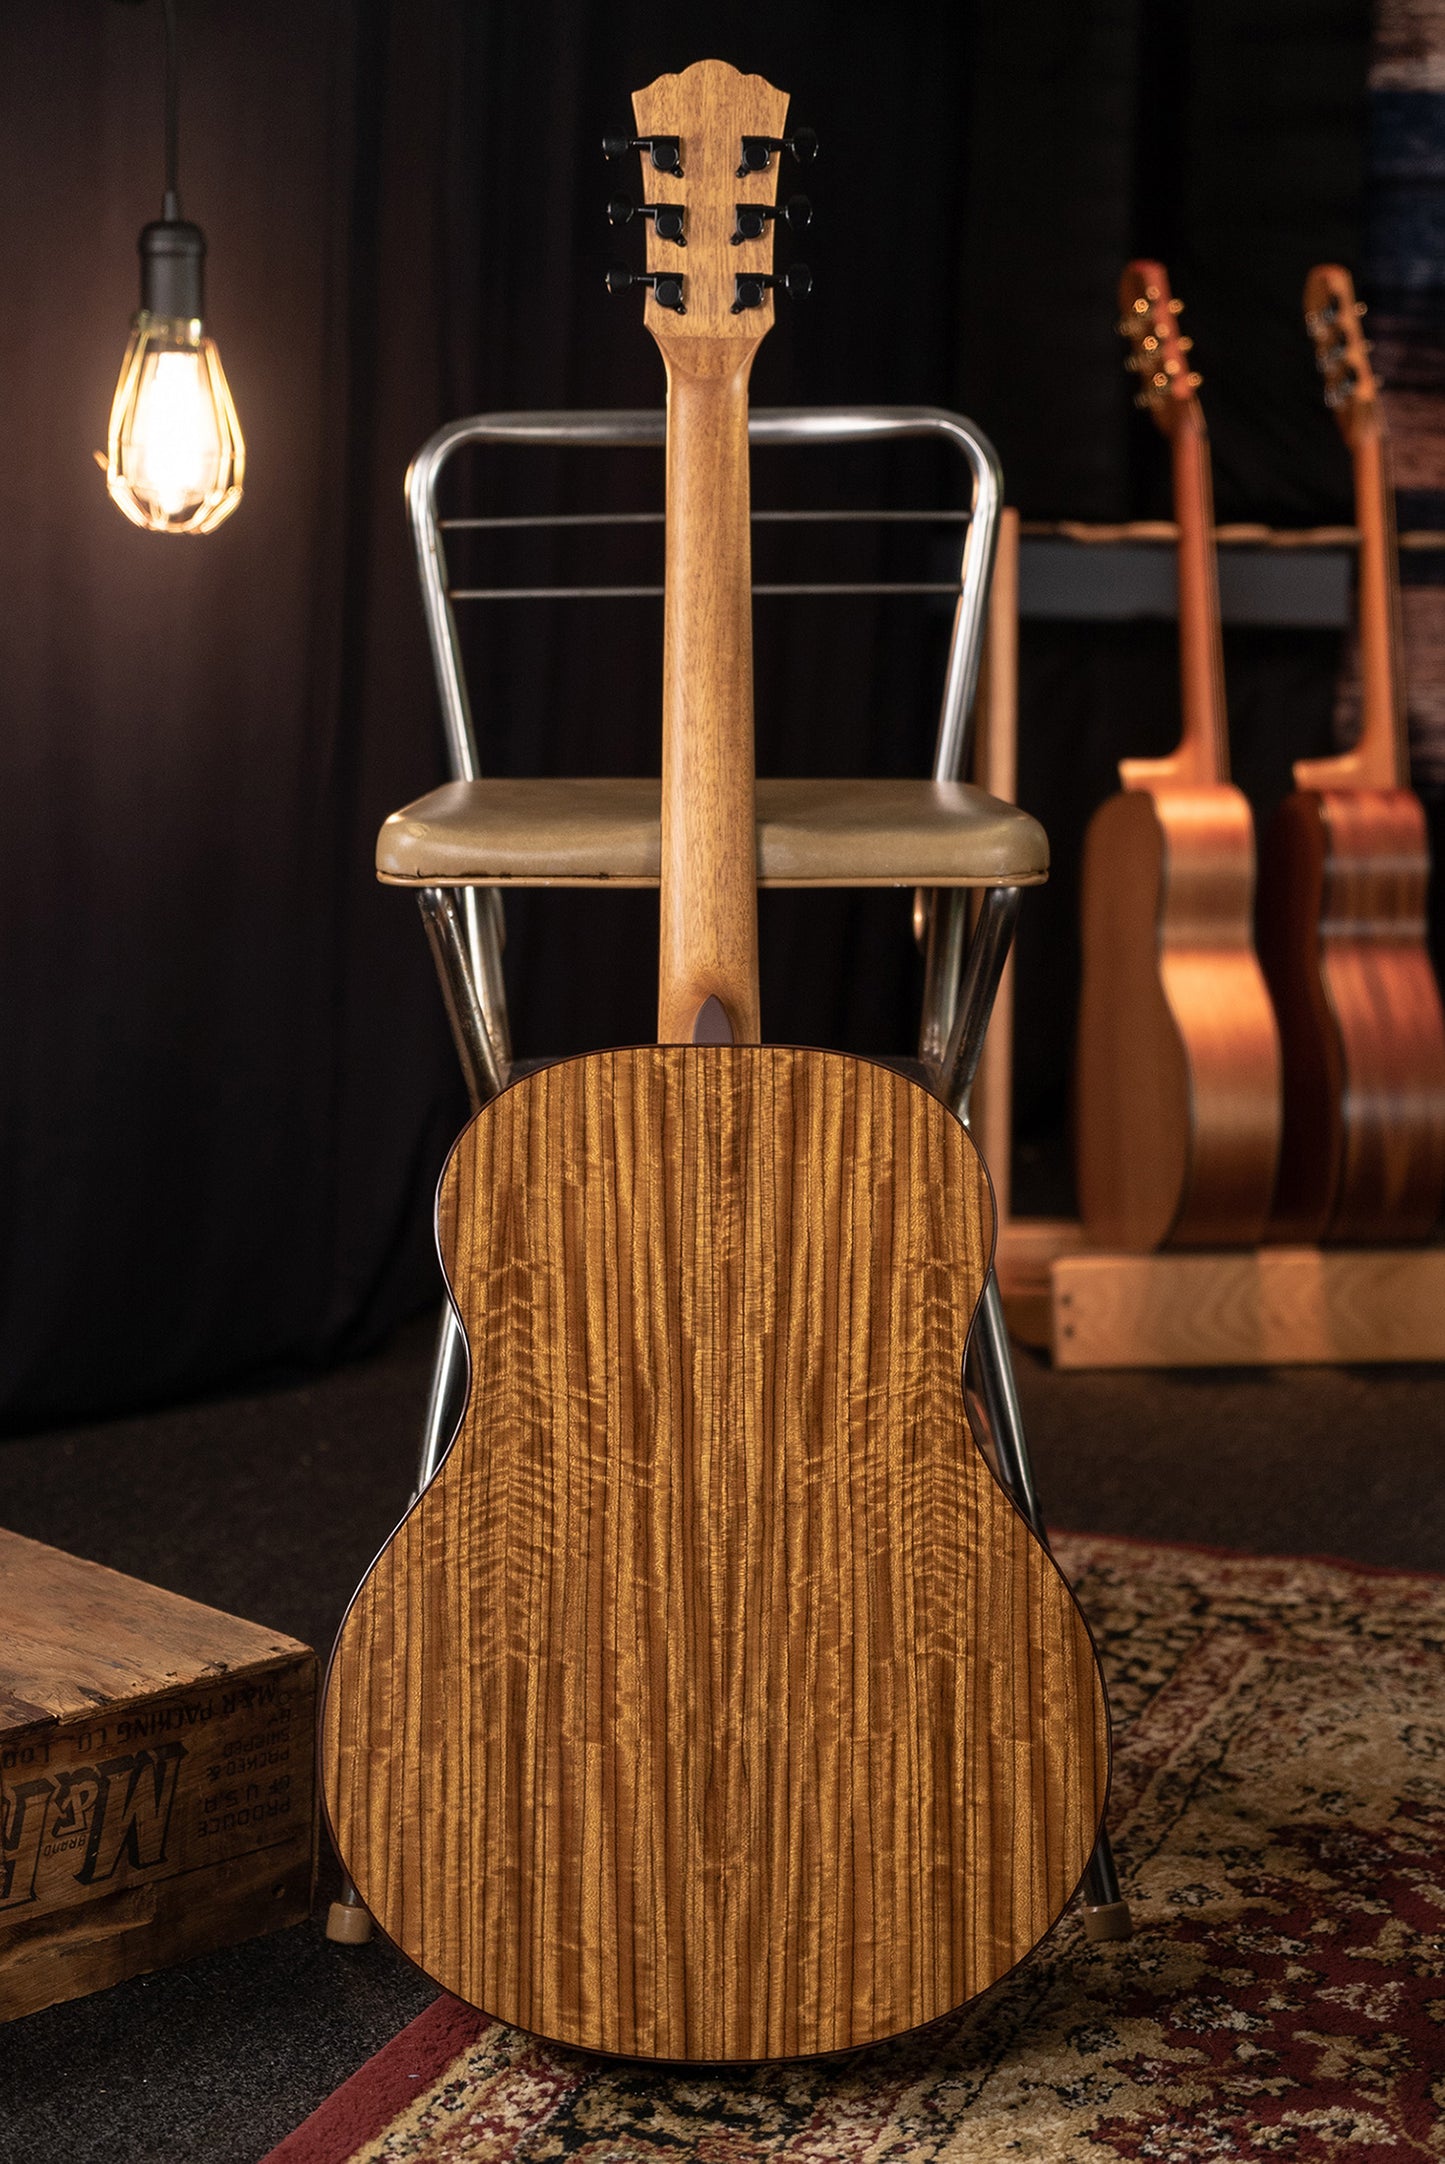 Washburn Novo S9 Bella Tono Studio Acoustic Guitar. Gloss Charcoal Burst